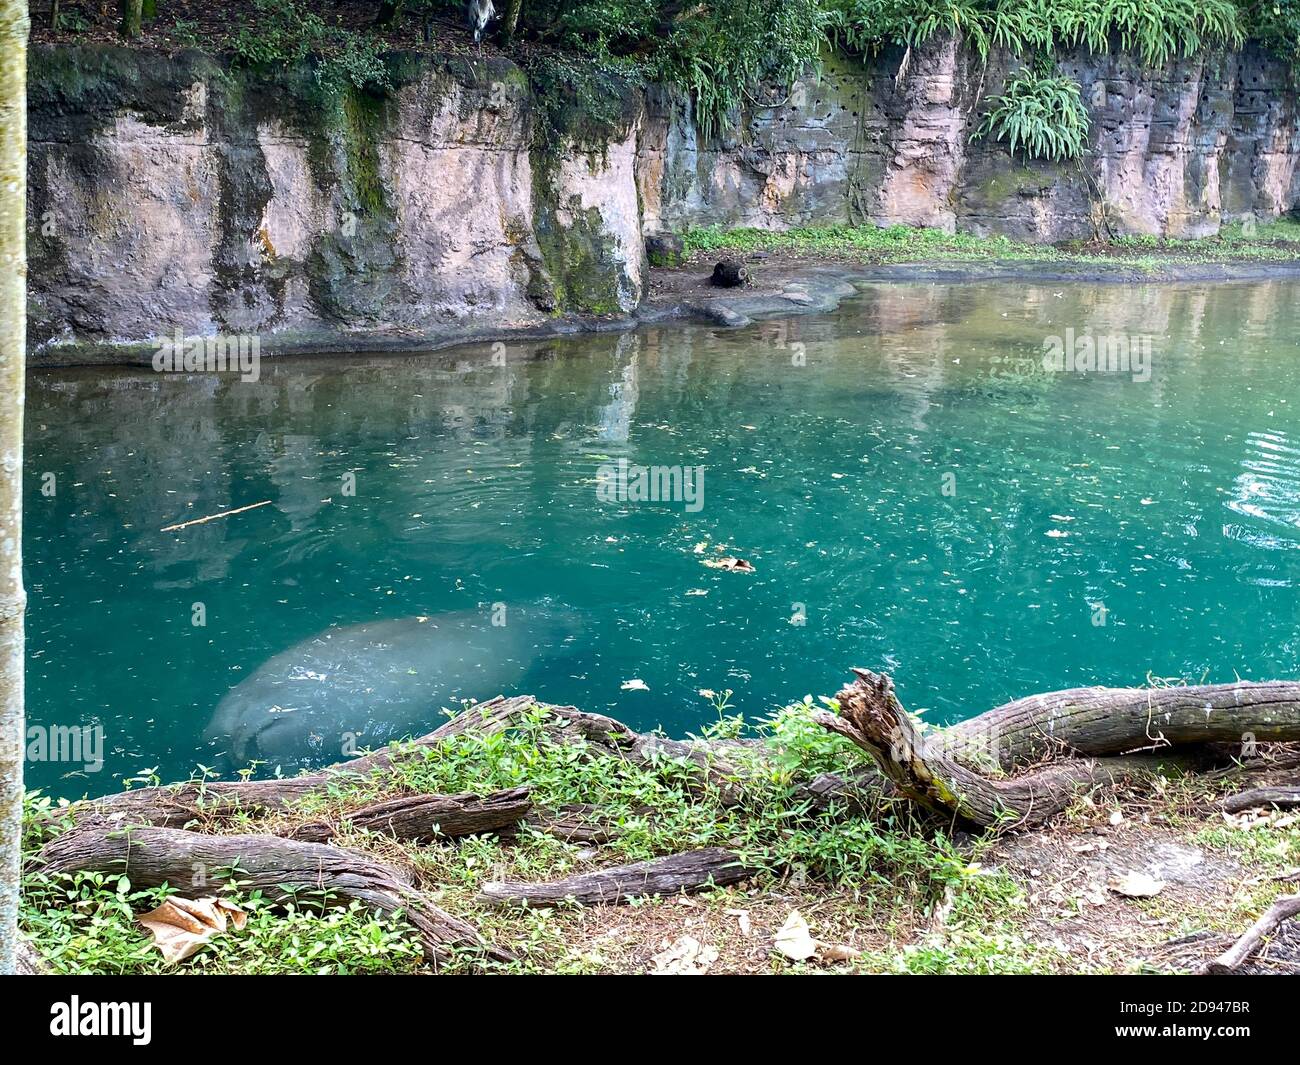 Ein Blühen von Hippopotamus in einem Zoo in einem Teich an einem hellen sonnigen Tag. Hippopotamus in einem Zoo schwimmen in einem Teich an einem hellen sonnigen Tag. Stockfoto